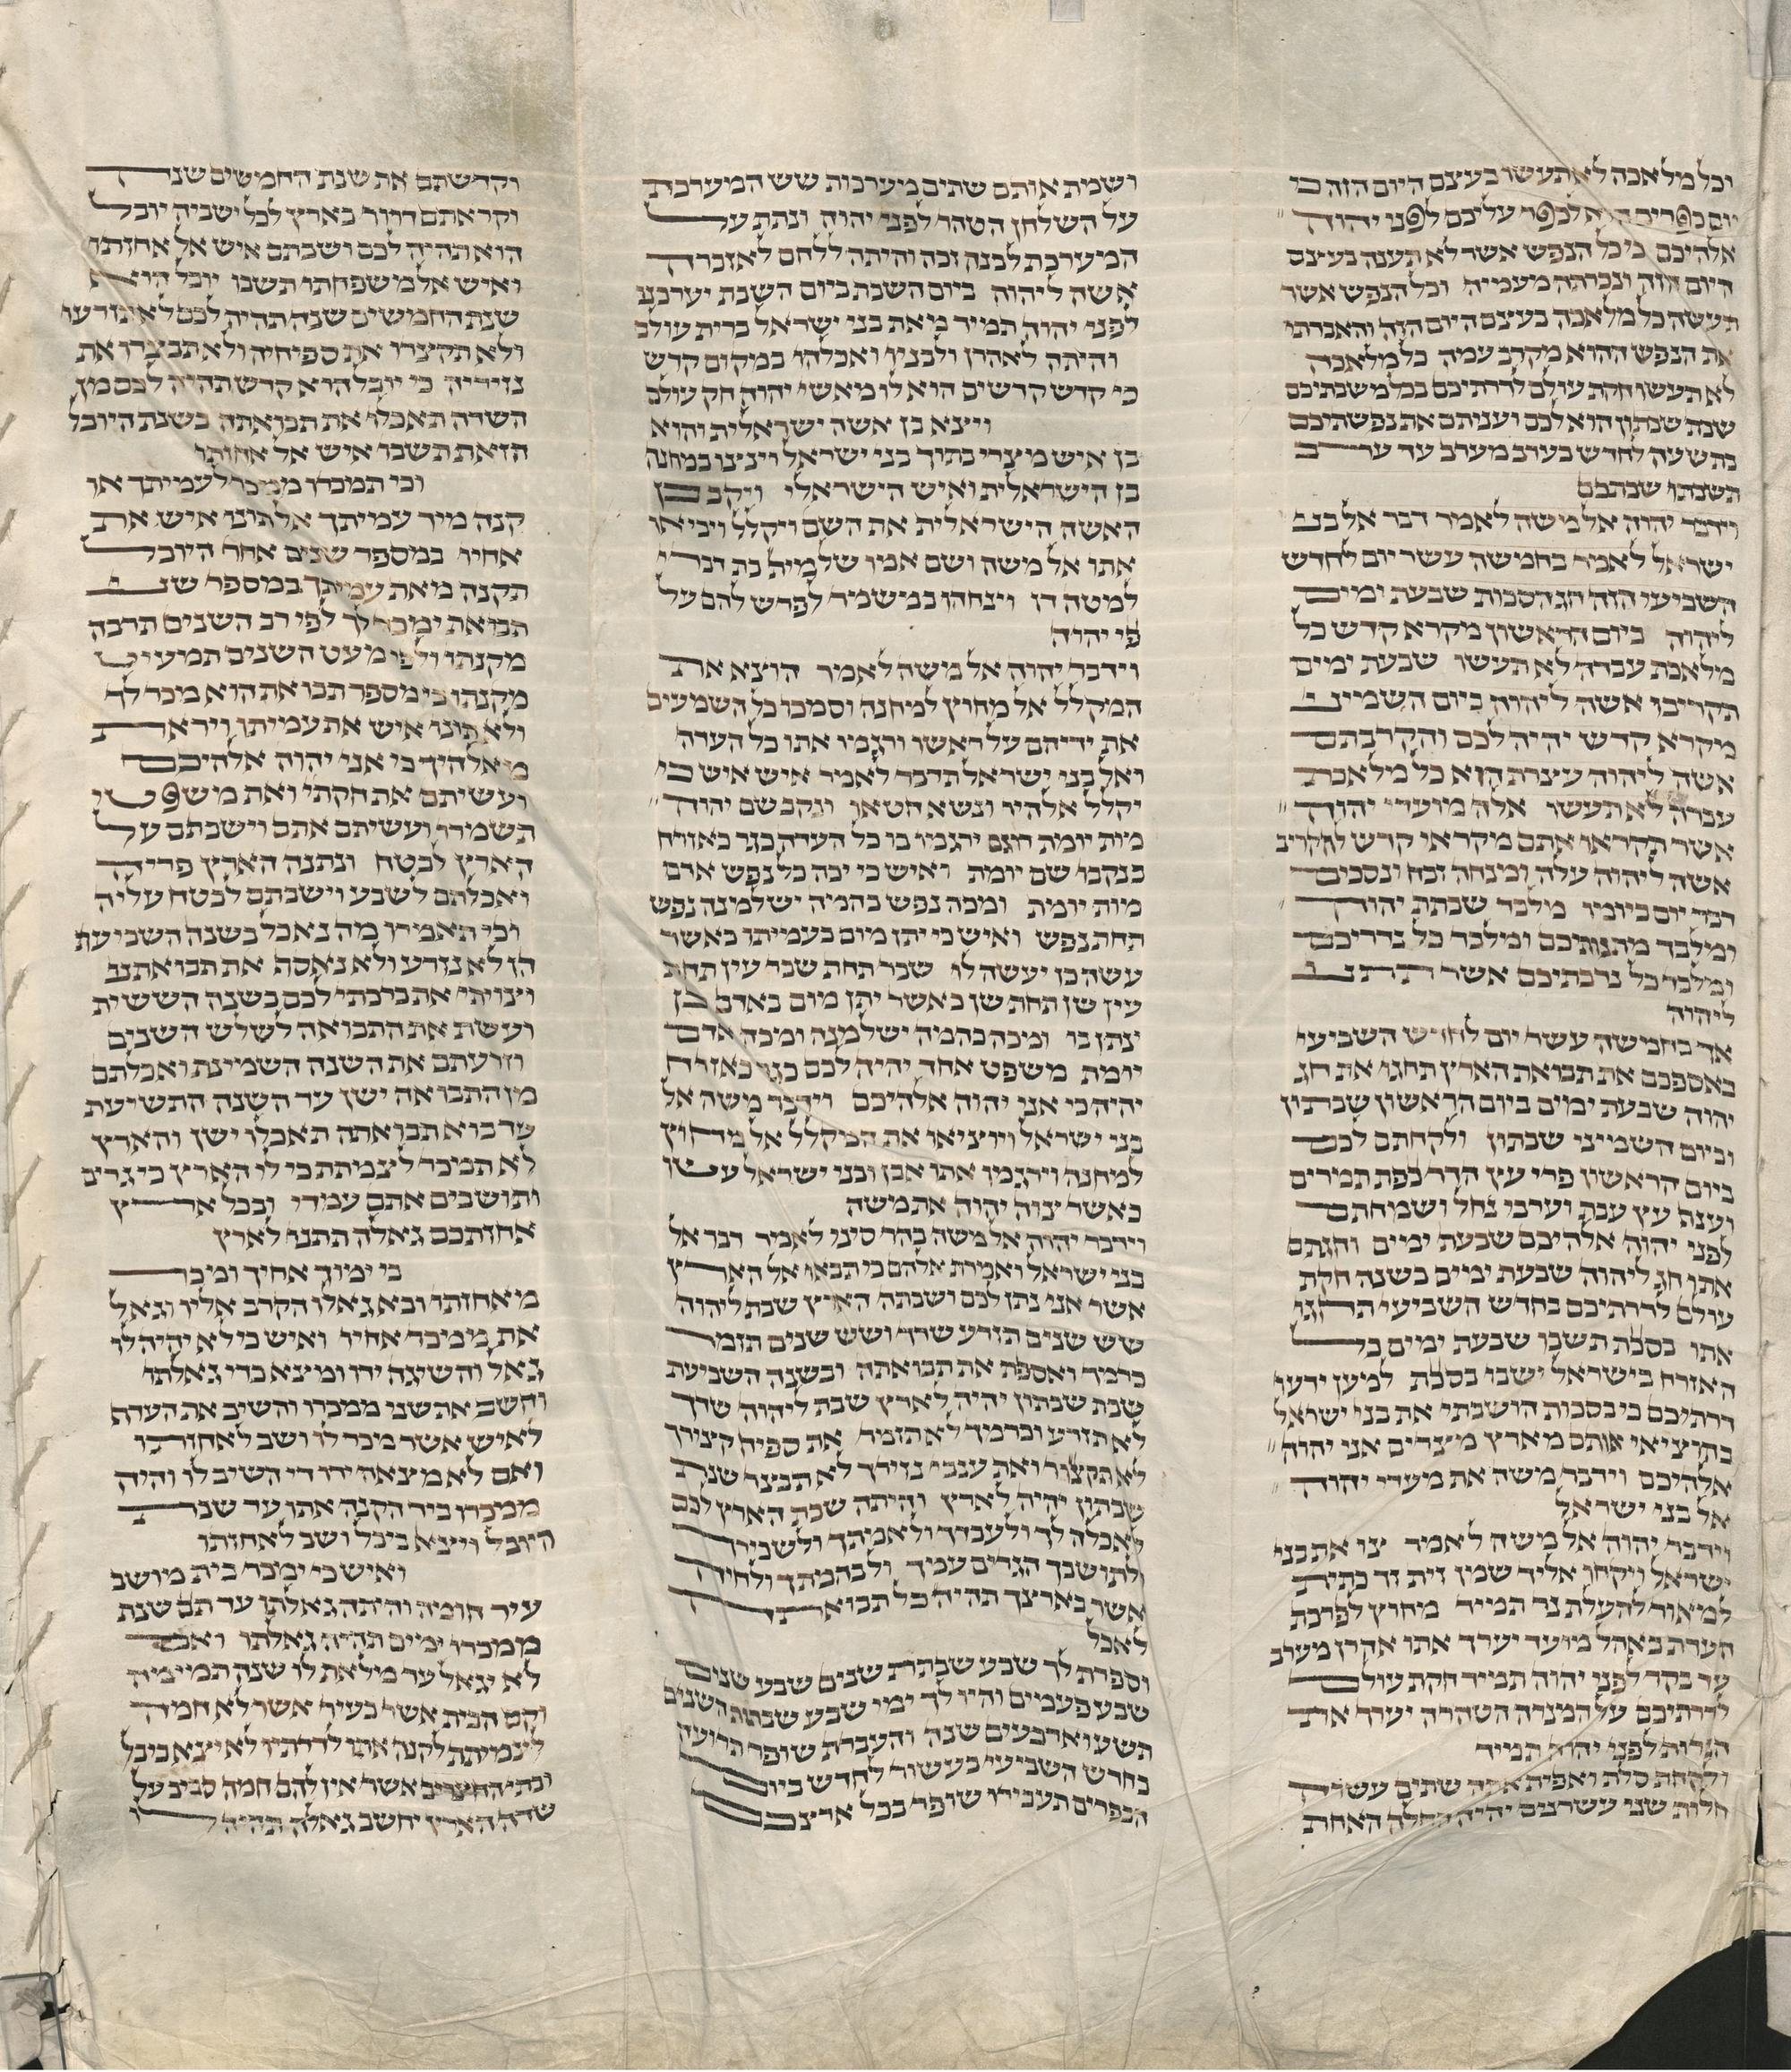 Ms. or. fol. 1218, Blatt 7, Kolumnen